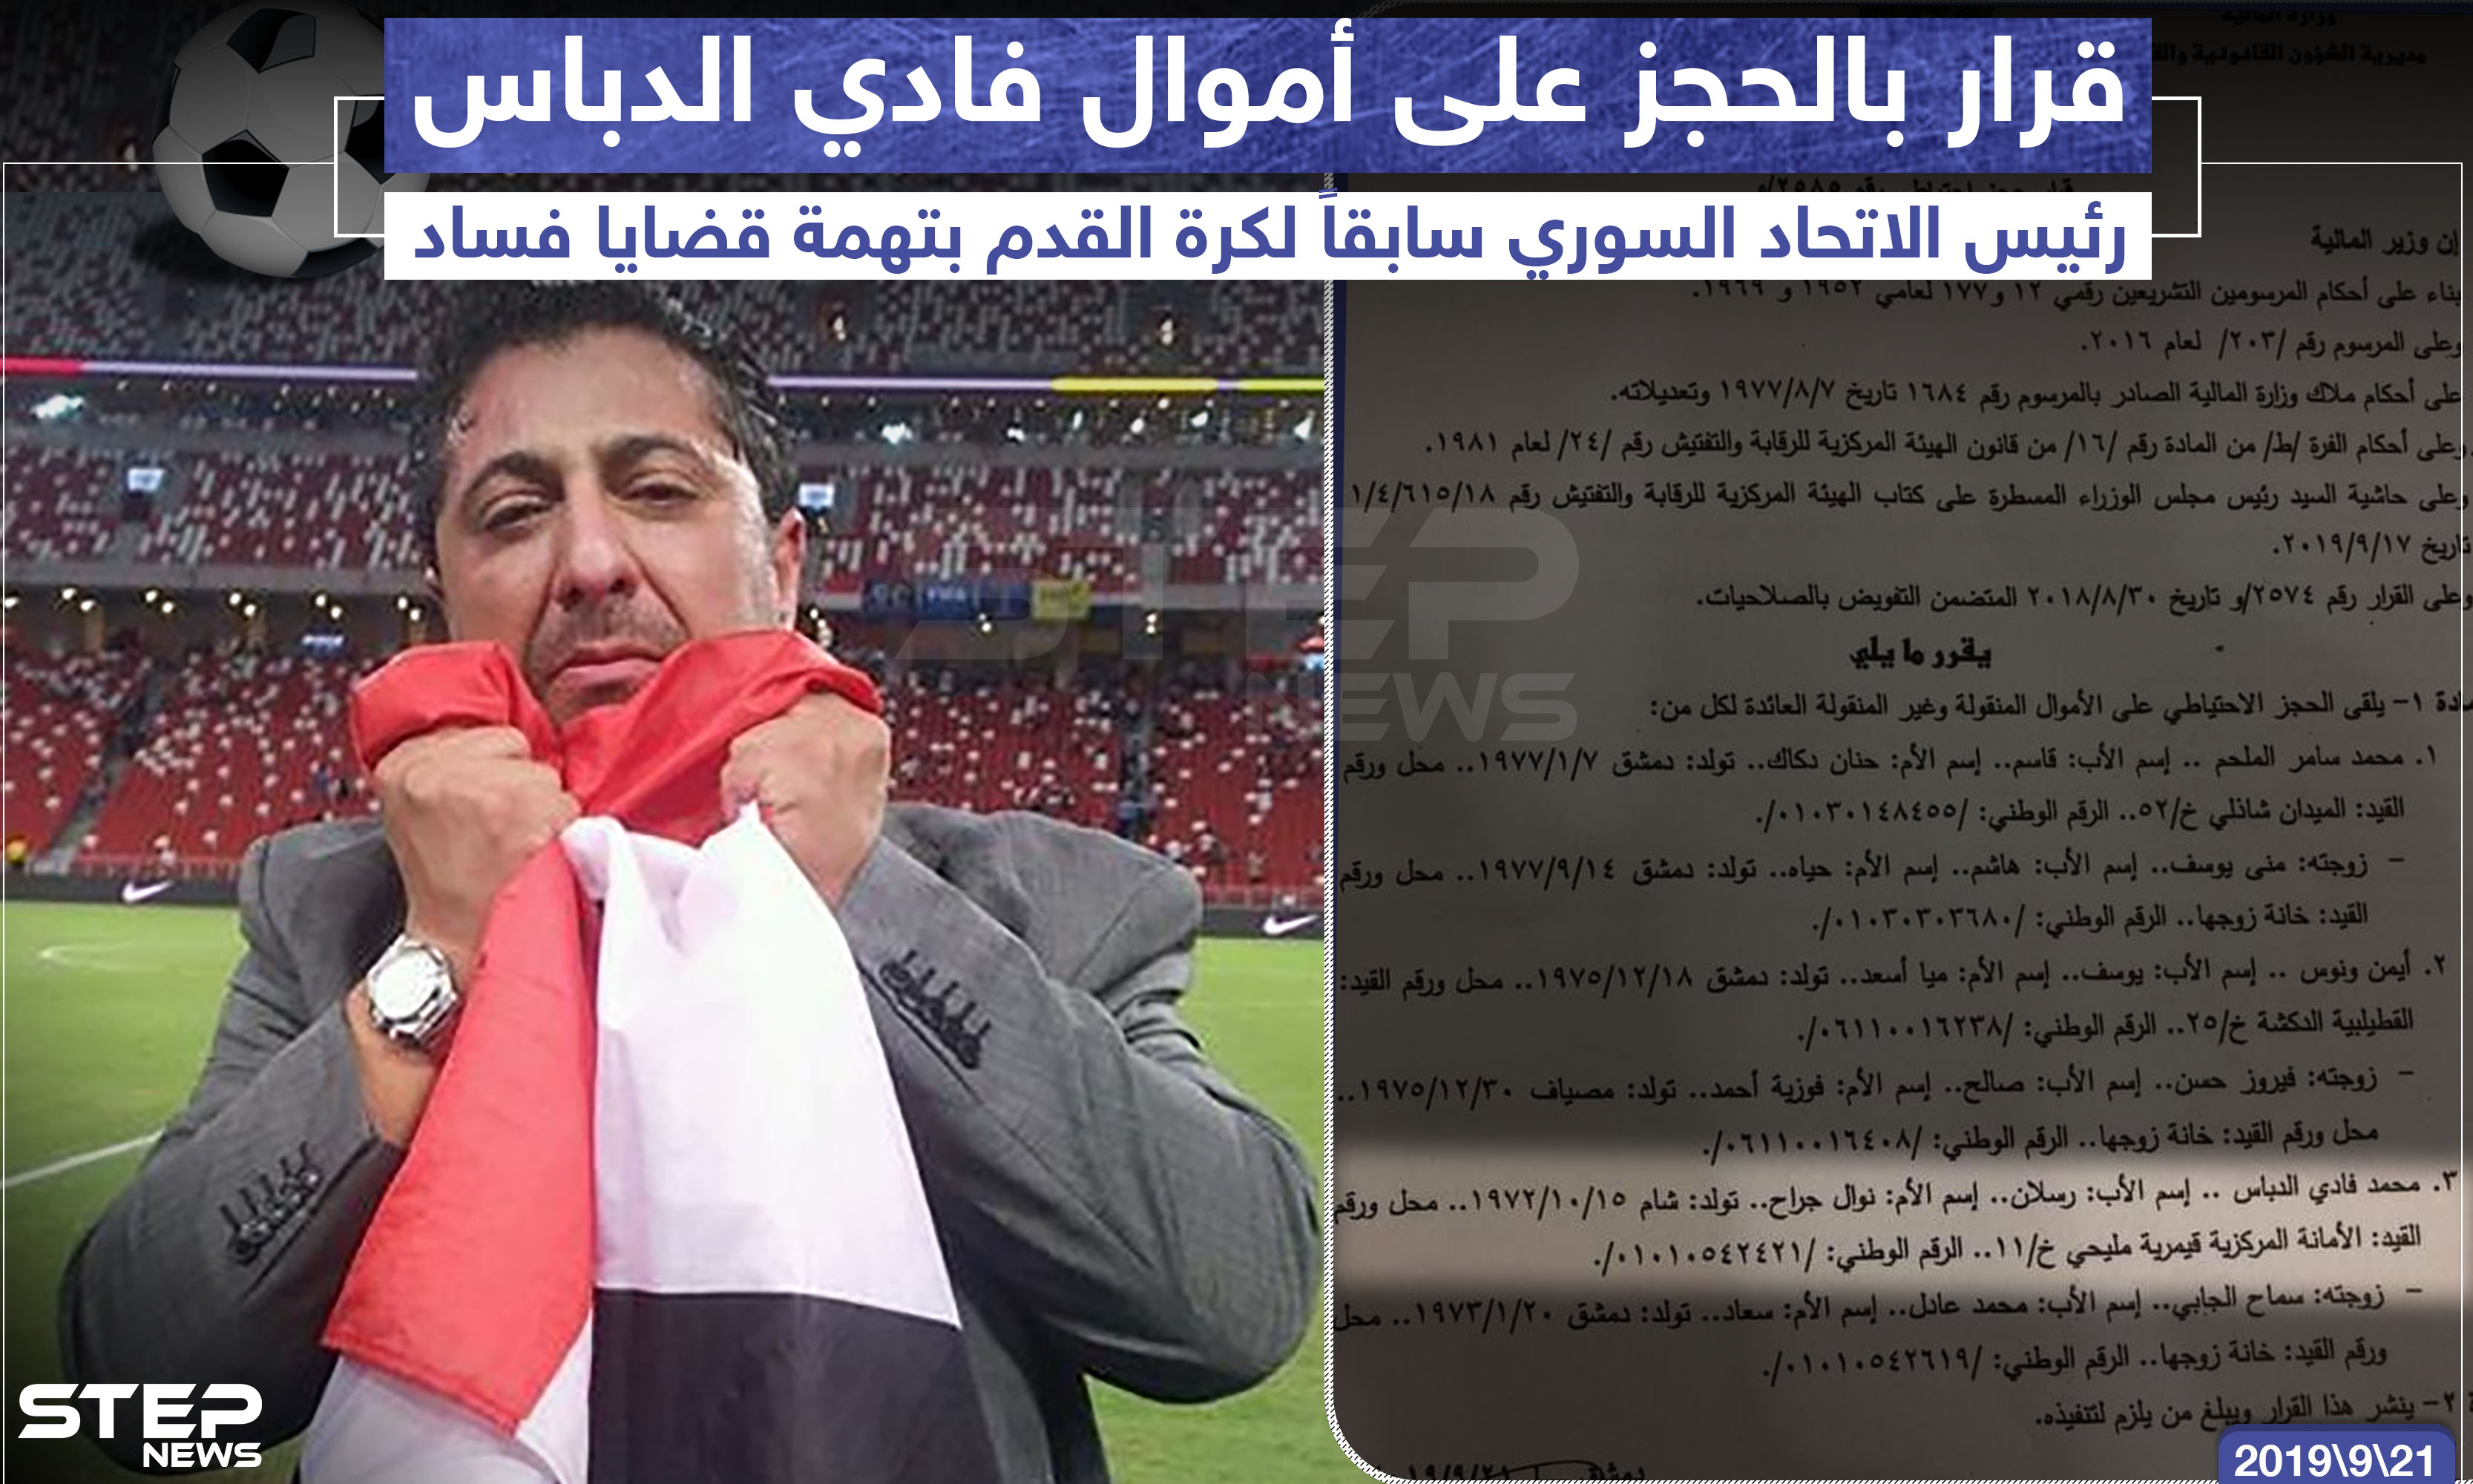 قرار بالحجز على أموال "فادي الدباس" رئبس الاتحاد السوري سابقاً لكرة القدم بتهمة قضايا فساد